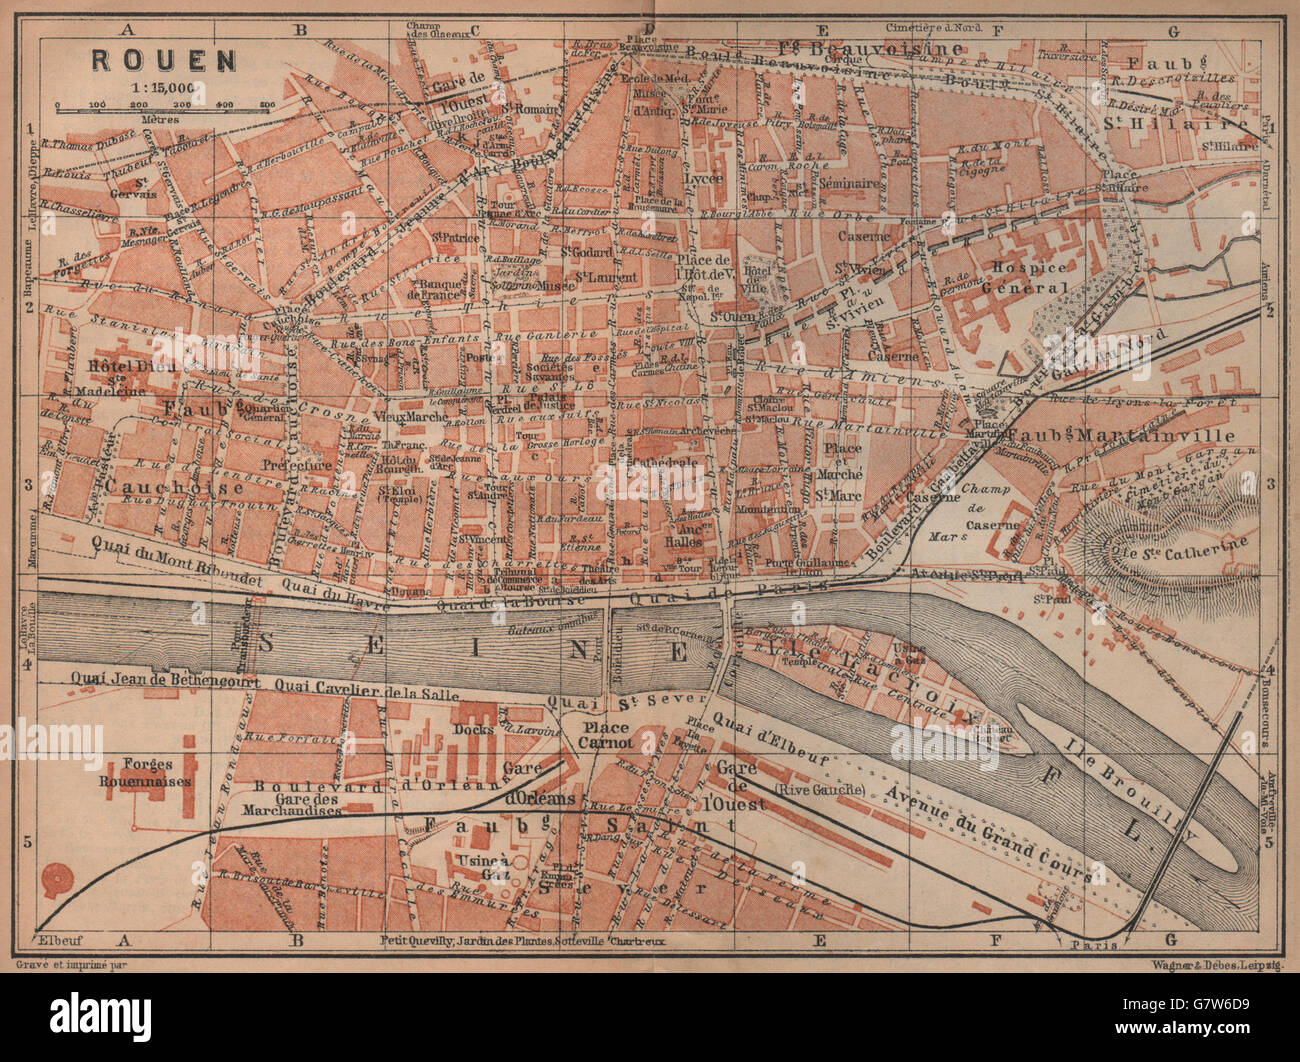 ROUEN antique town city plan de la ville. Seine-Maritime carte, 1905 old map Stock Photo